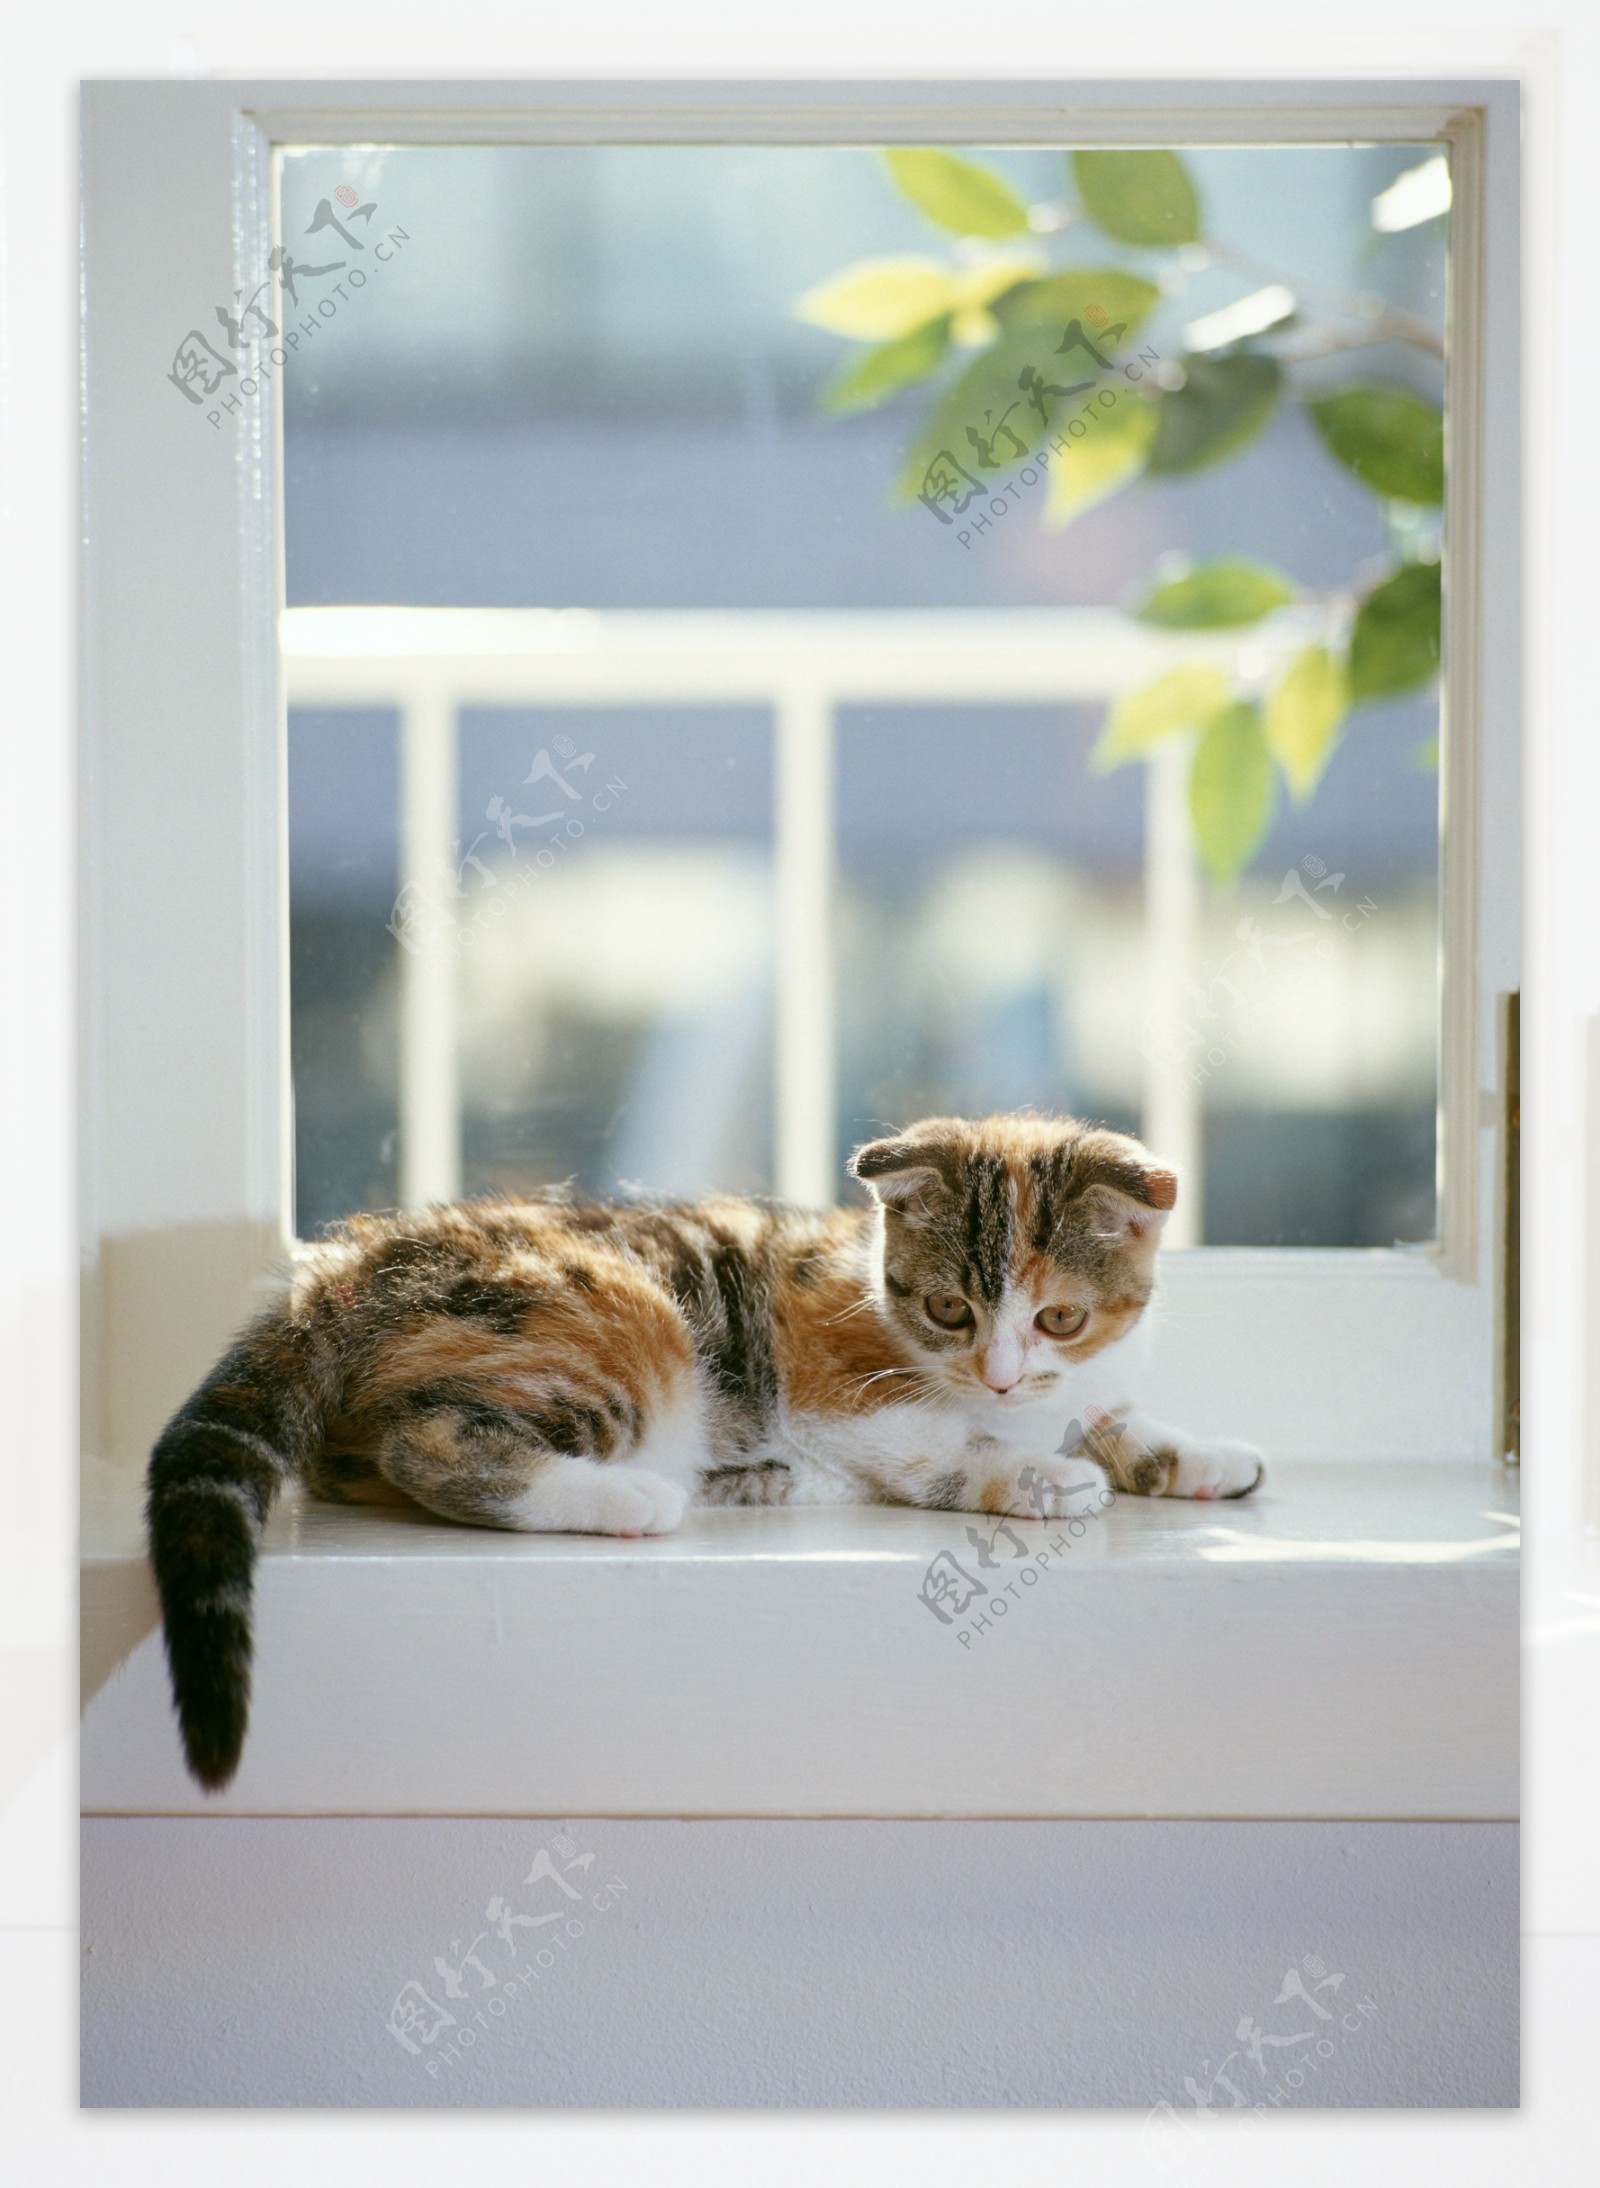 趴在窗台上的小花猫图片